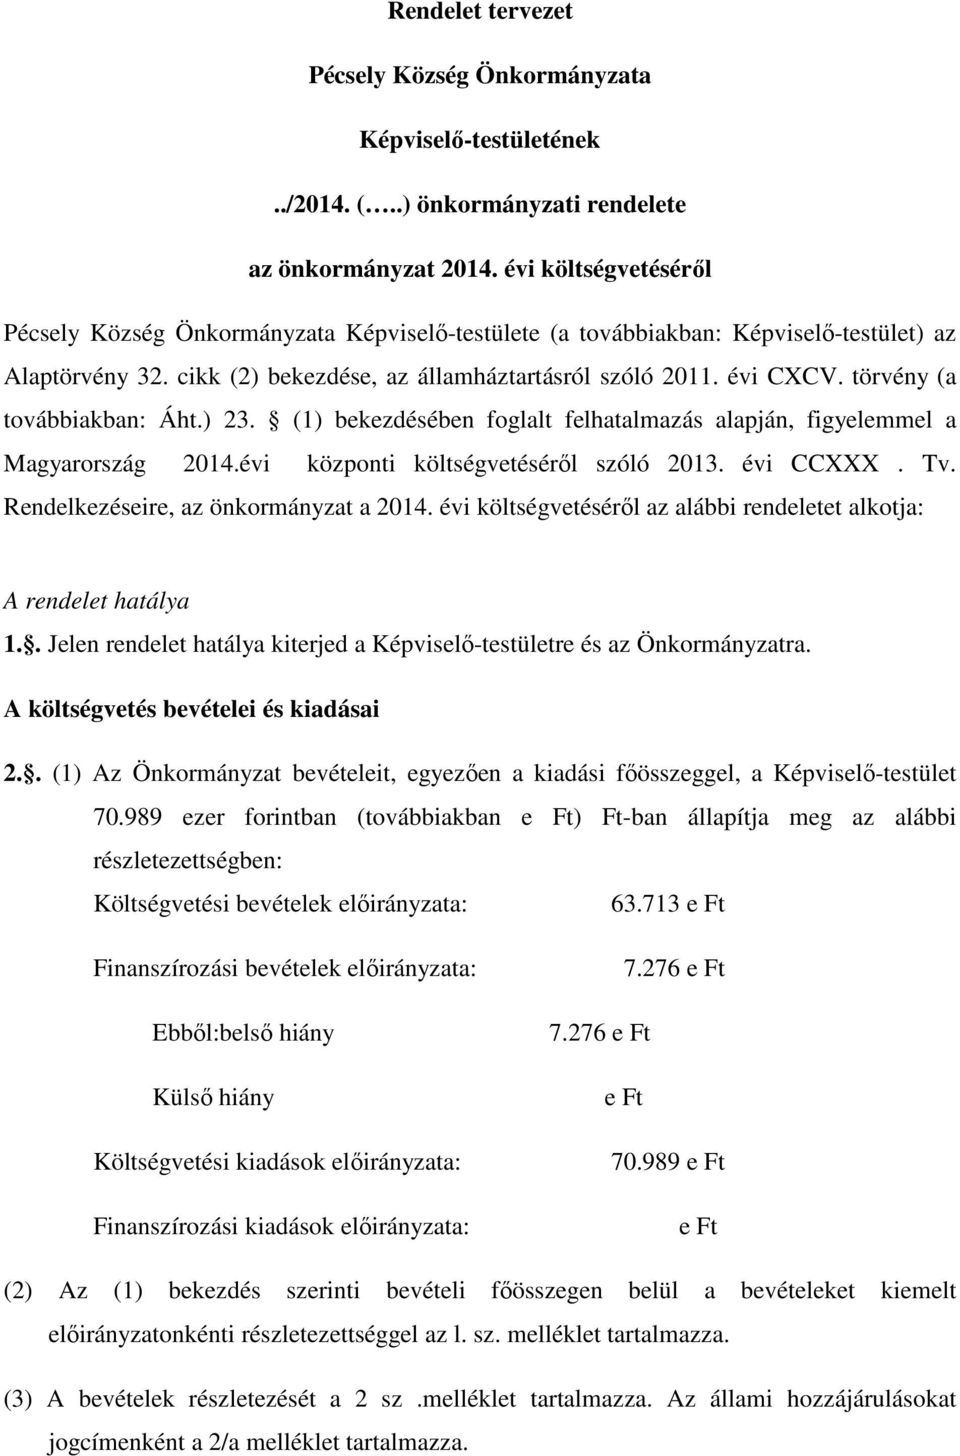 törvény (a továbbiakban: Áht.) 23. (1) bekezdésében foglalt felhatalmazás alapján, figyelemmel a Magyarország 2014.évi központi költségvetéséről szóló 2013. évi CCXXX. Tv.